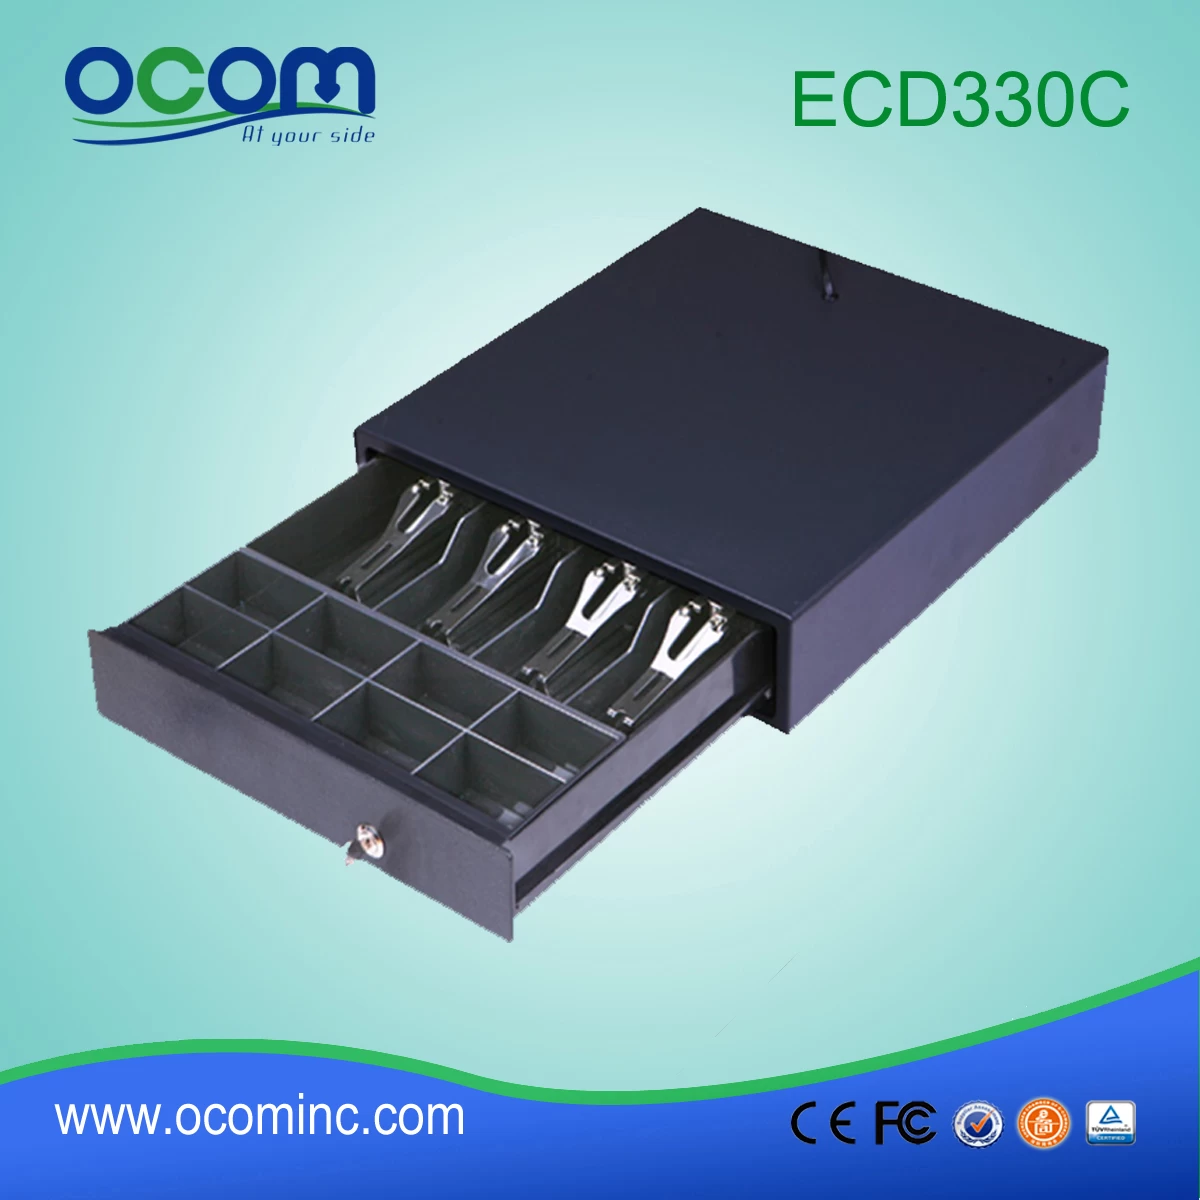 (ECD330C)New black color pos cash drawer